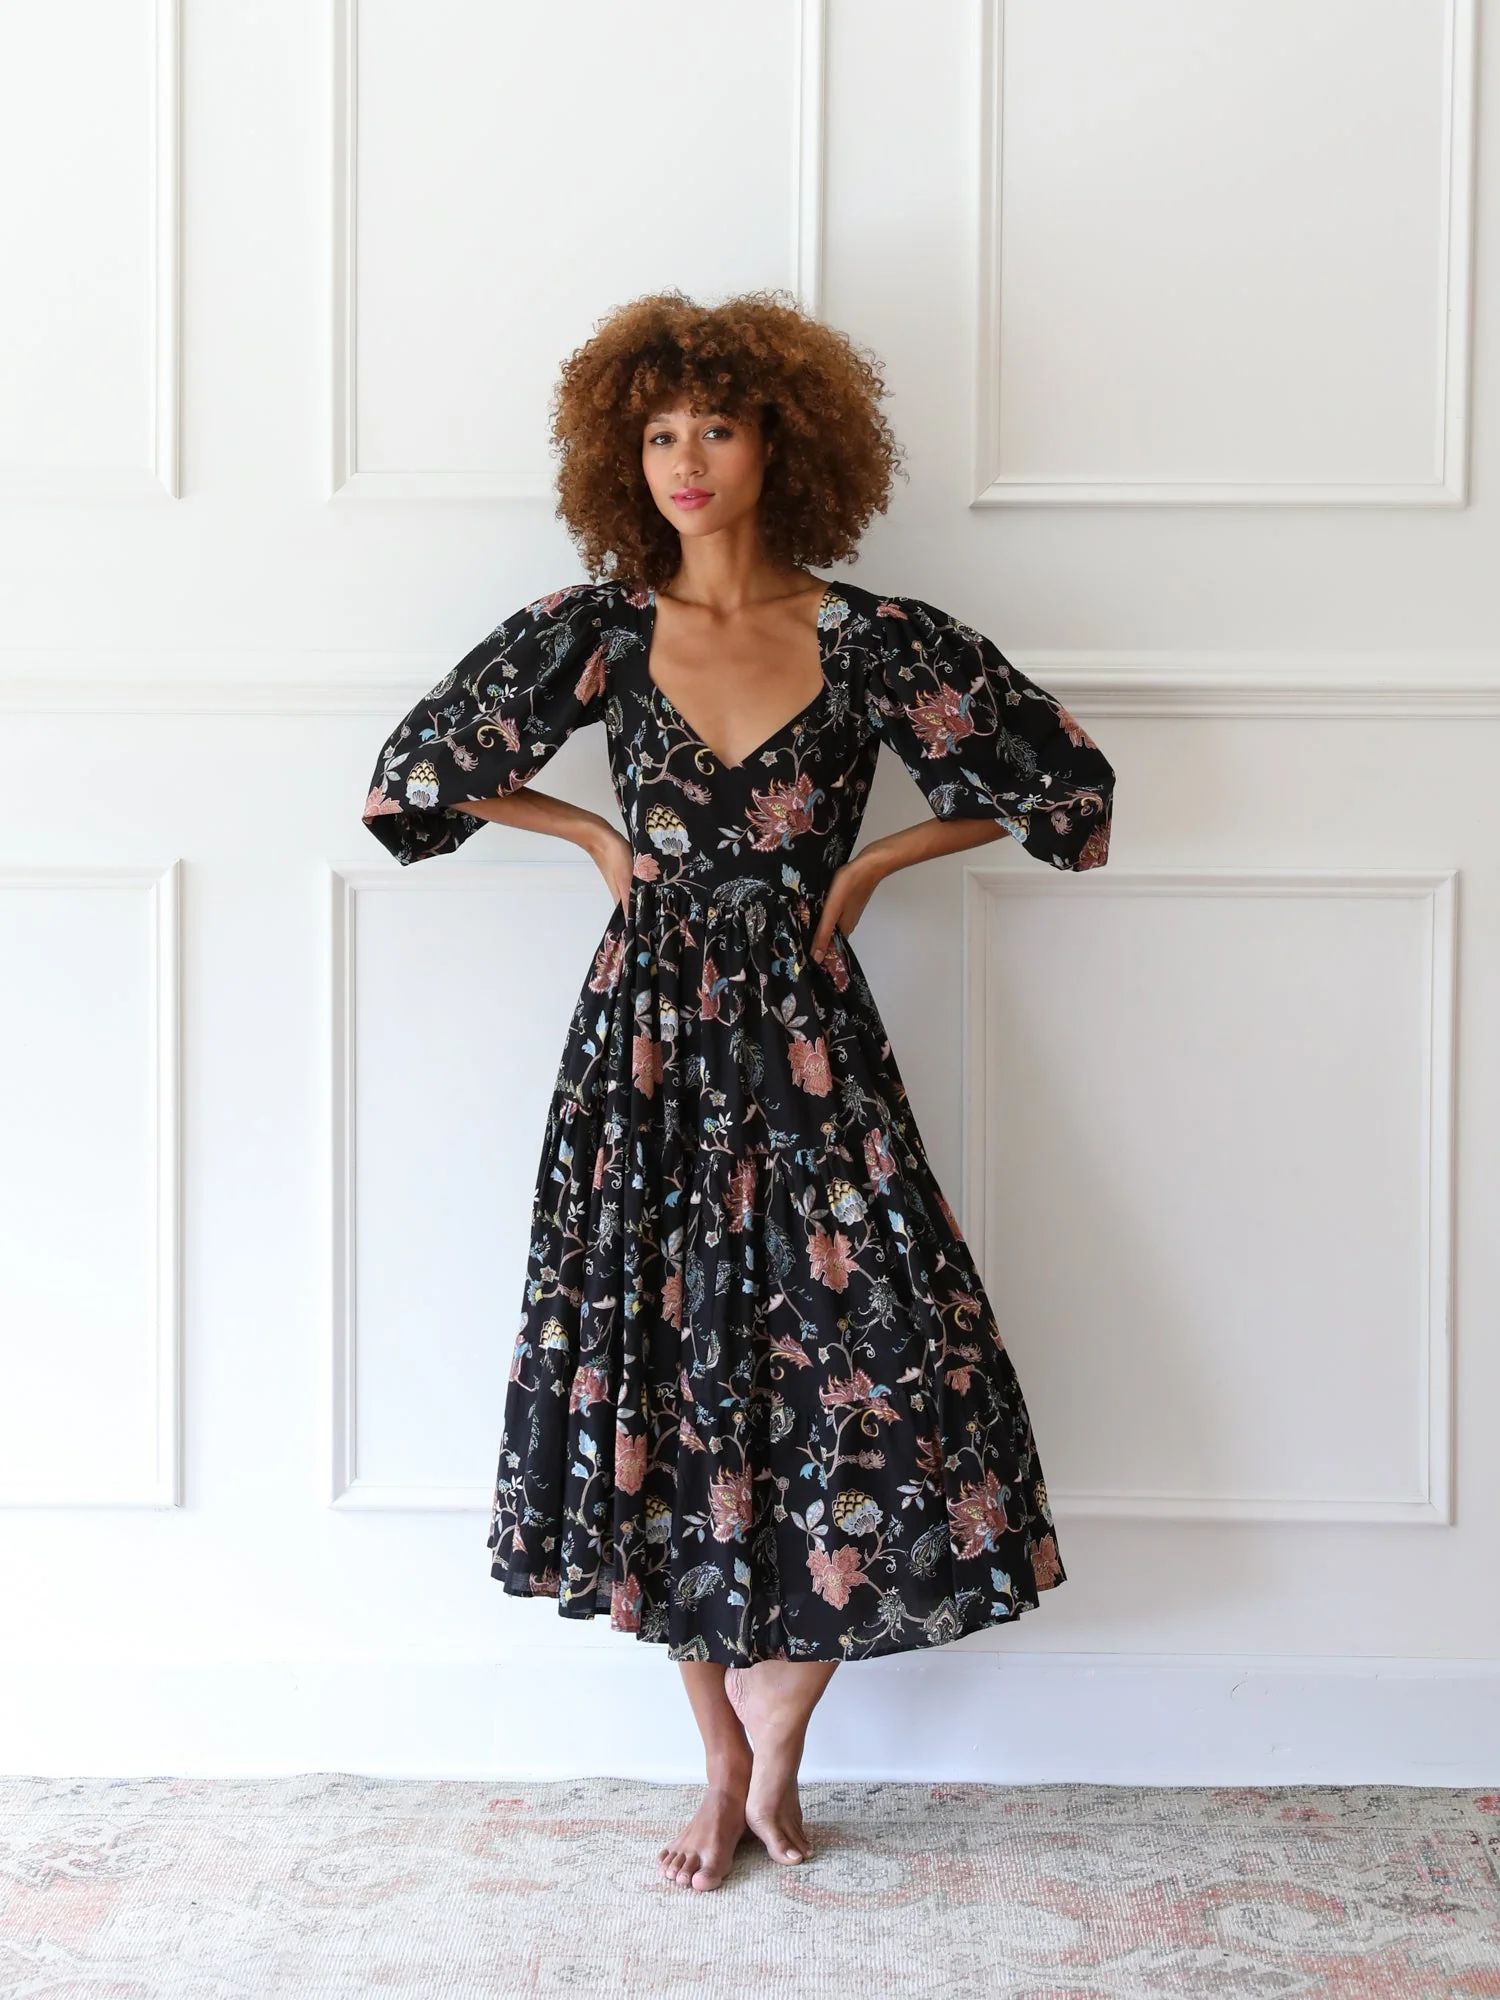 Shop Mille - Ellinor Dress in St Germain | Mille